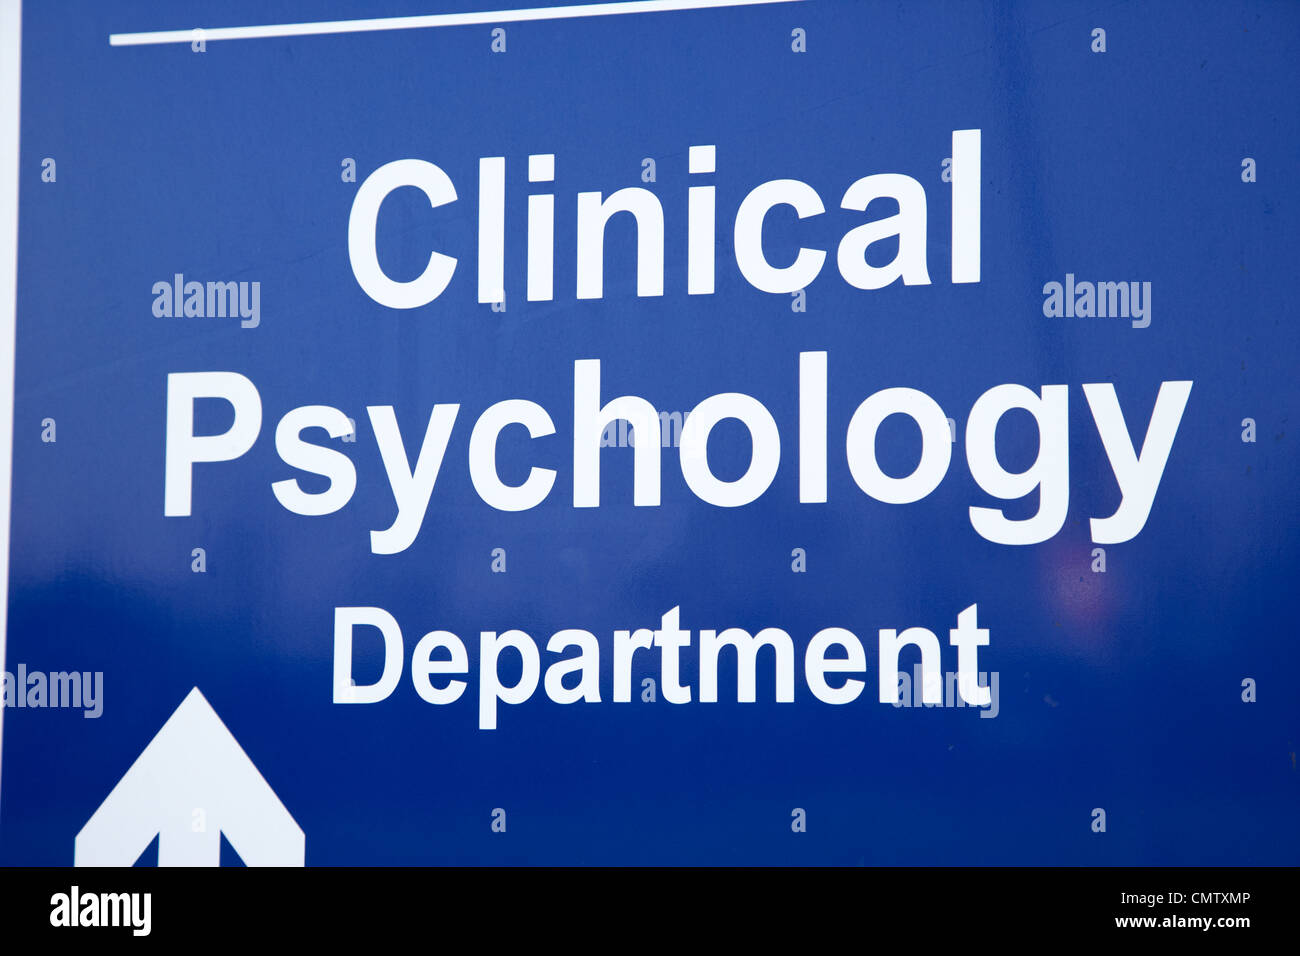 Cartel para el departamento de psicología clínica del hospital uk reino unido Foto de stock